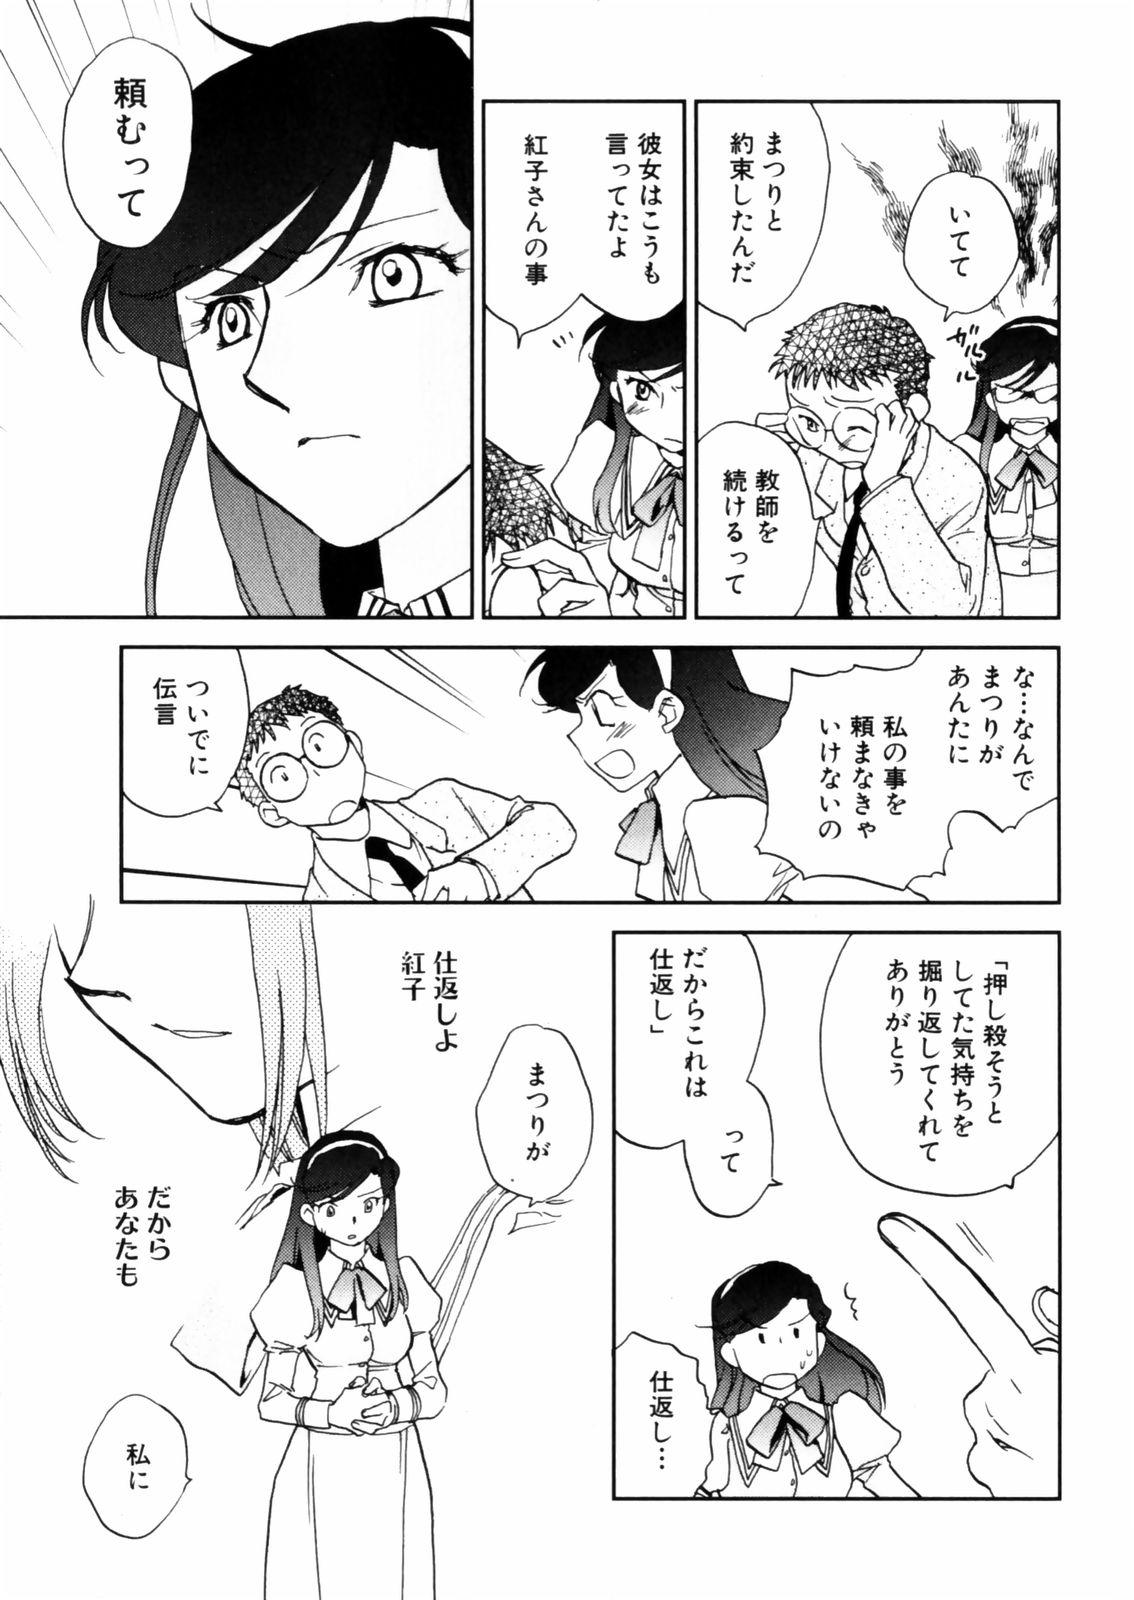 [Okano Ahiru] Hanasake ! Otome Juku (Otome Private Tutoring School) Vol.2 128